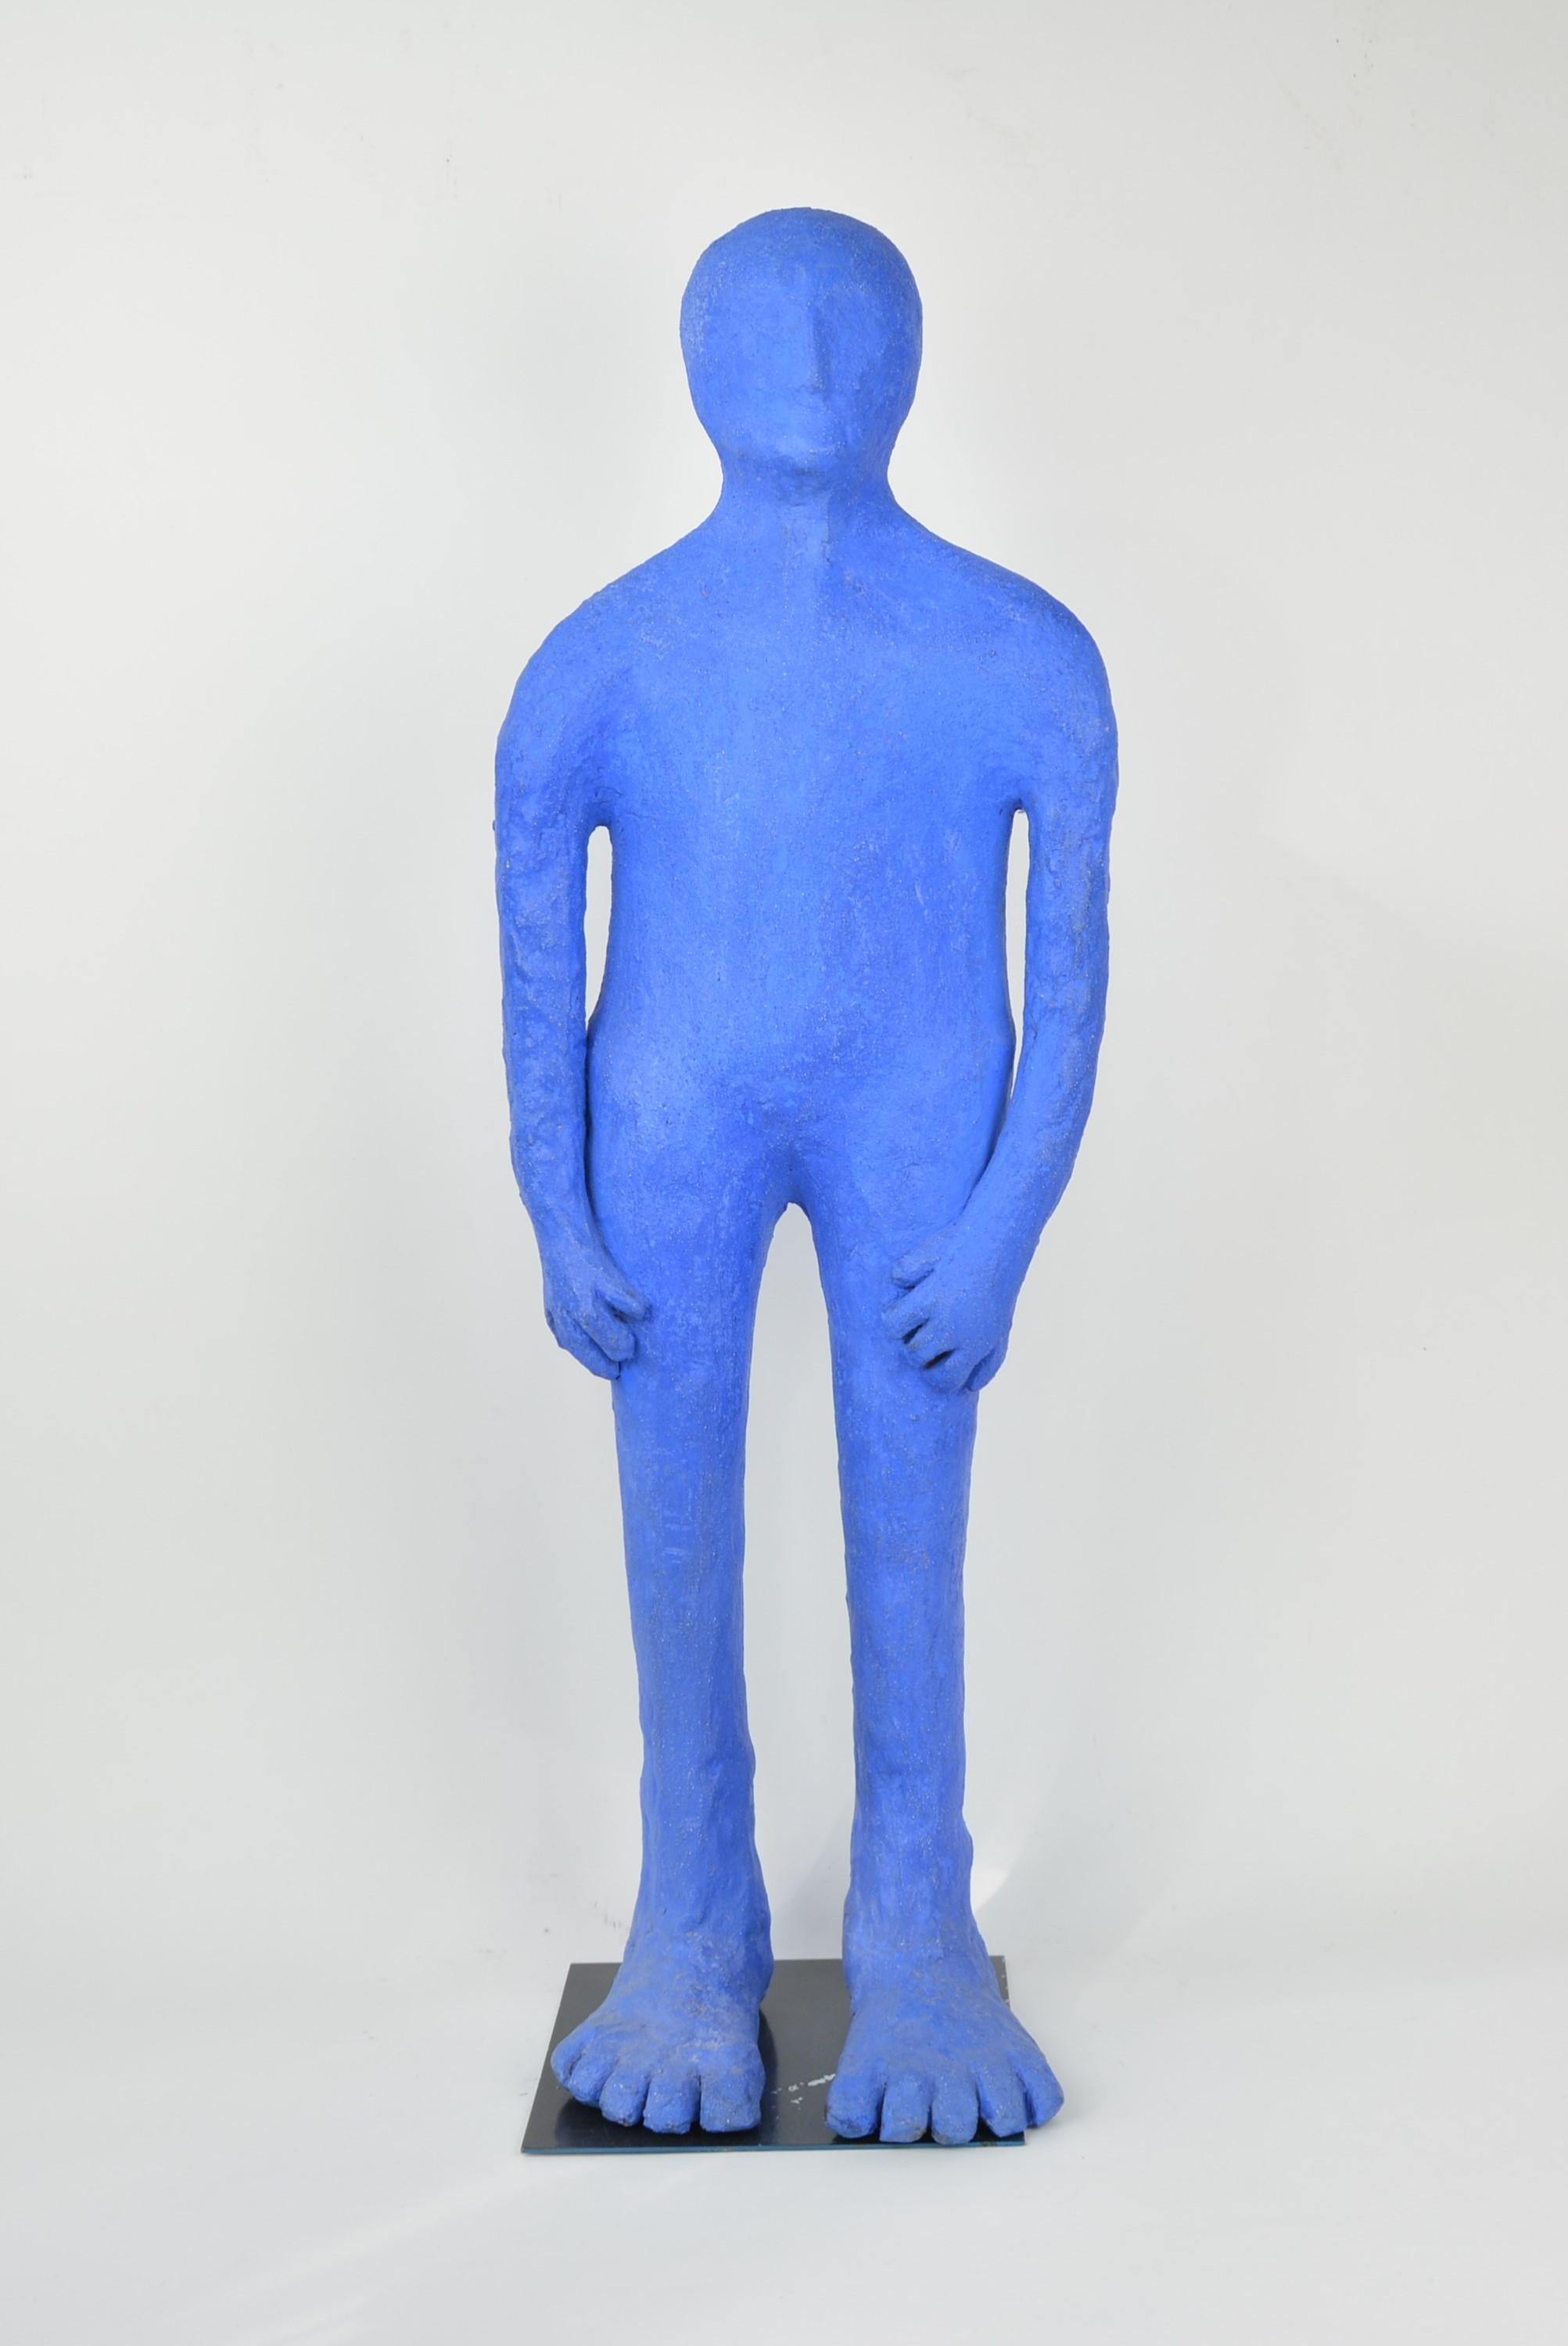 P'tit Bleu N° 3 - Sculpture by Colette Biquand